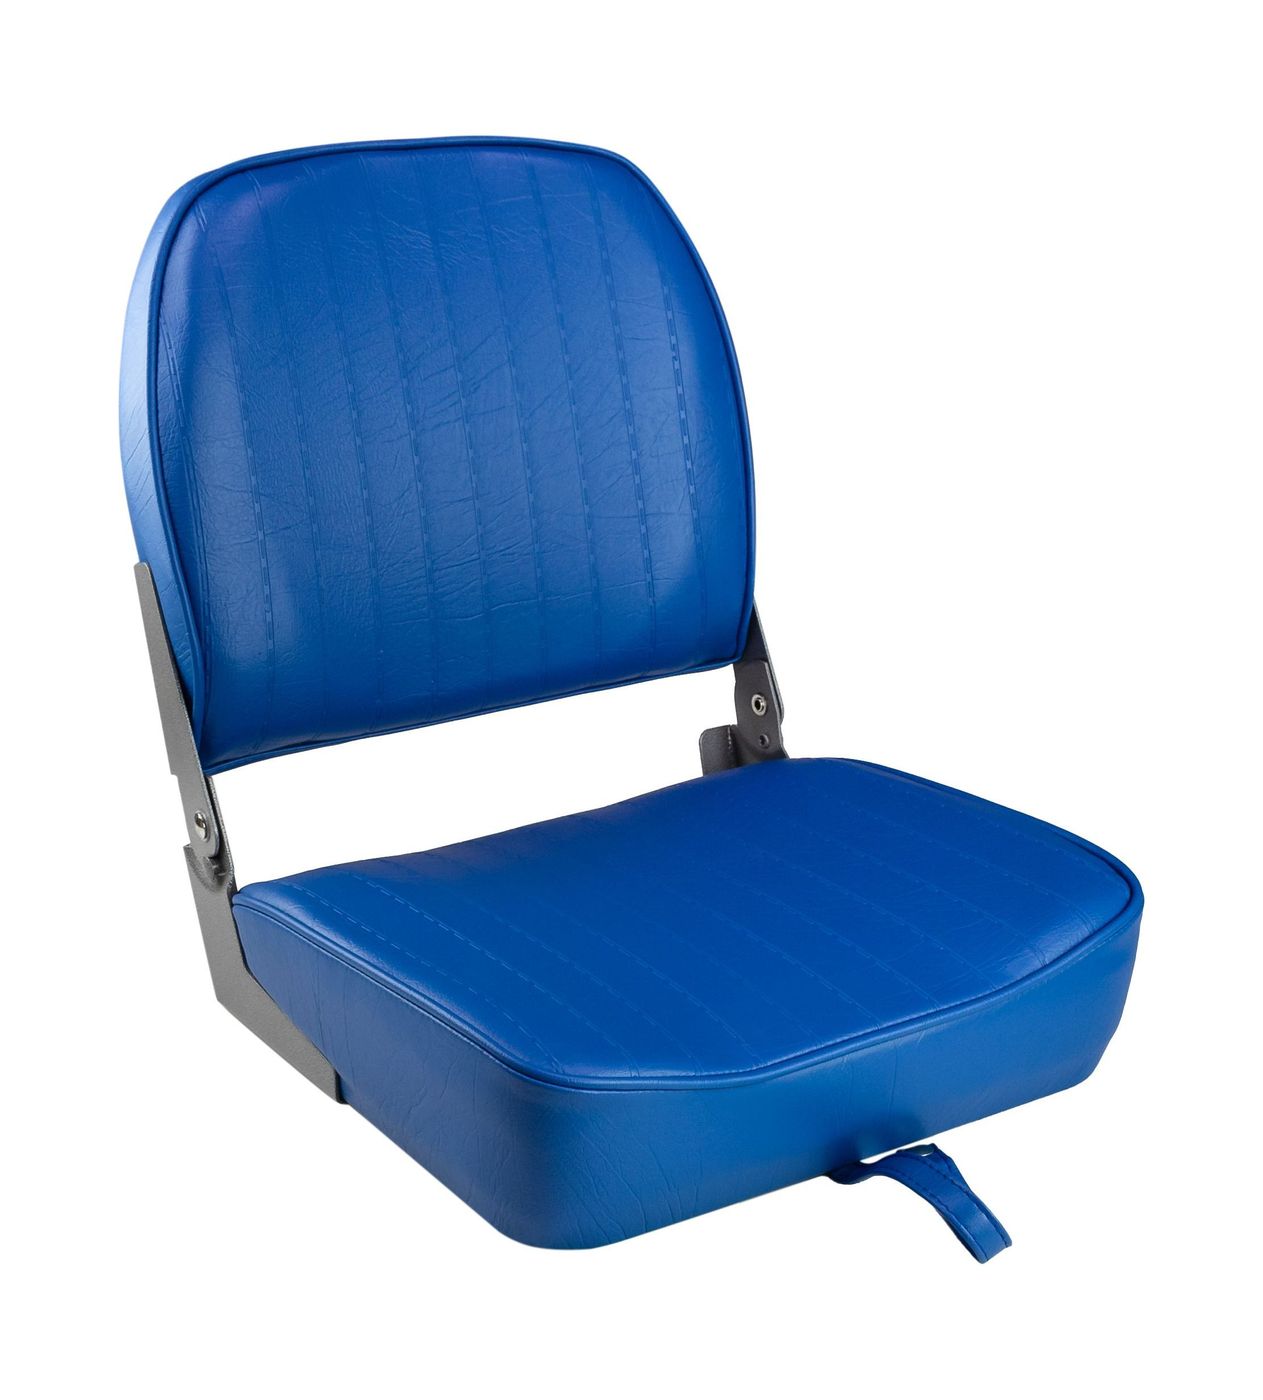 Кресло складное мягкое ECONOMY с низкой спинкой, цвет синий 1040621 кресло мягкое складное высокая спинка обивка винил синий marine rocket 75127b mr